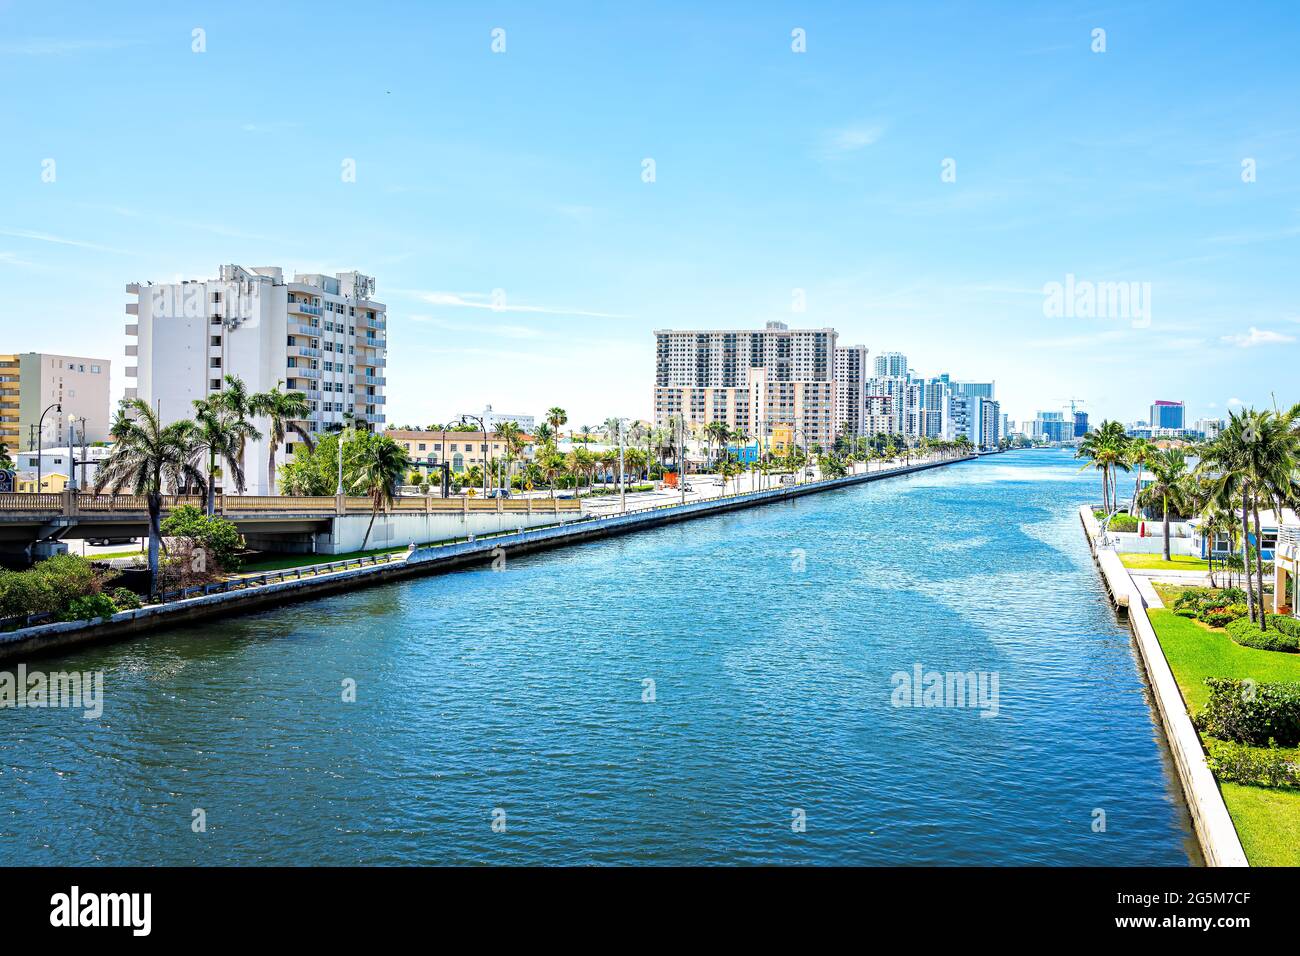 Hollywood Miami Beach Florida Cityscape horizon de gratte-ciels résidentiels bâtiments côtiers appartements appartements au-dessus de la vue aérienne à grand angle de Stranaha Banque D'Images